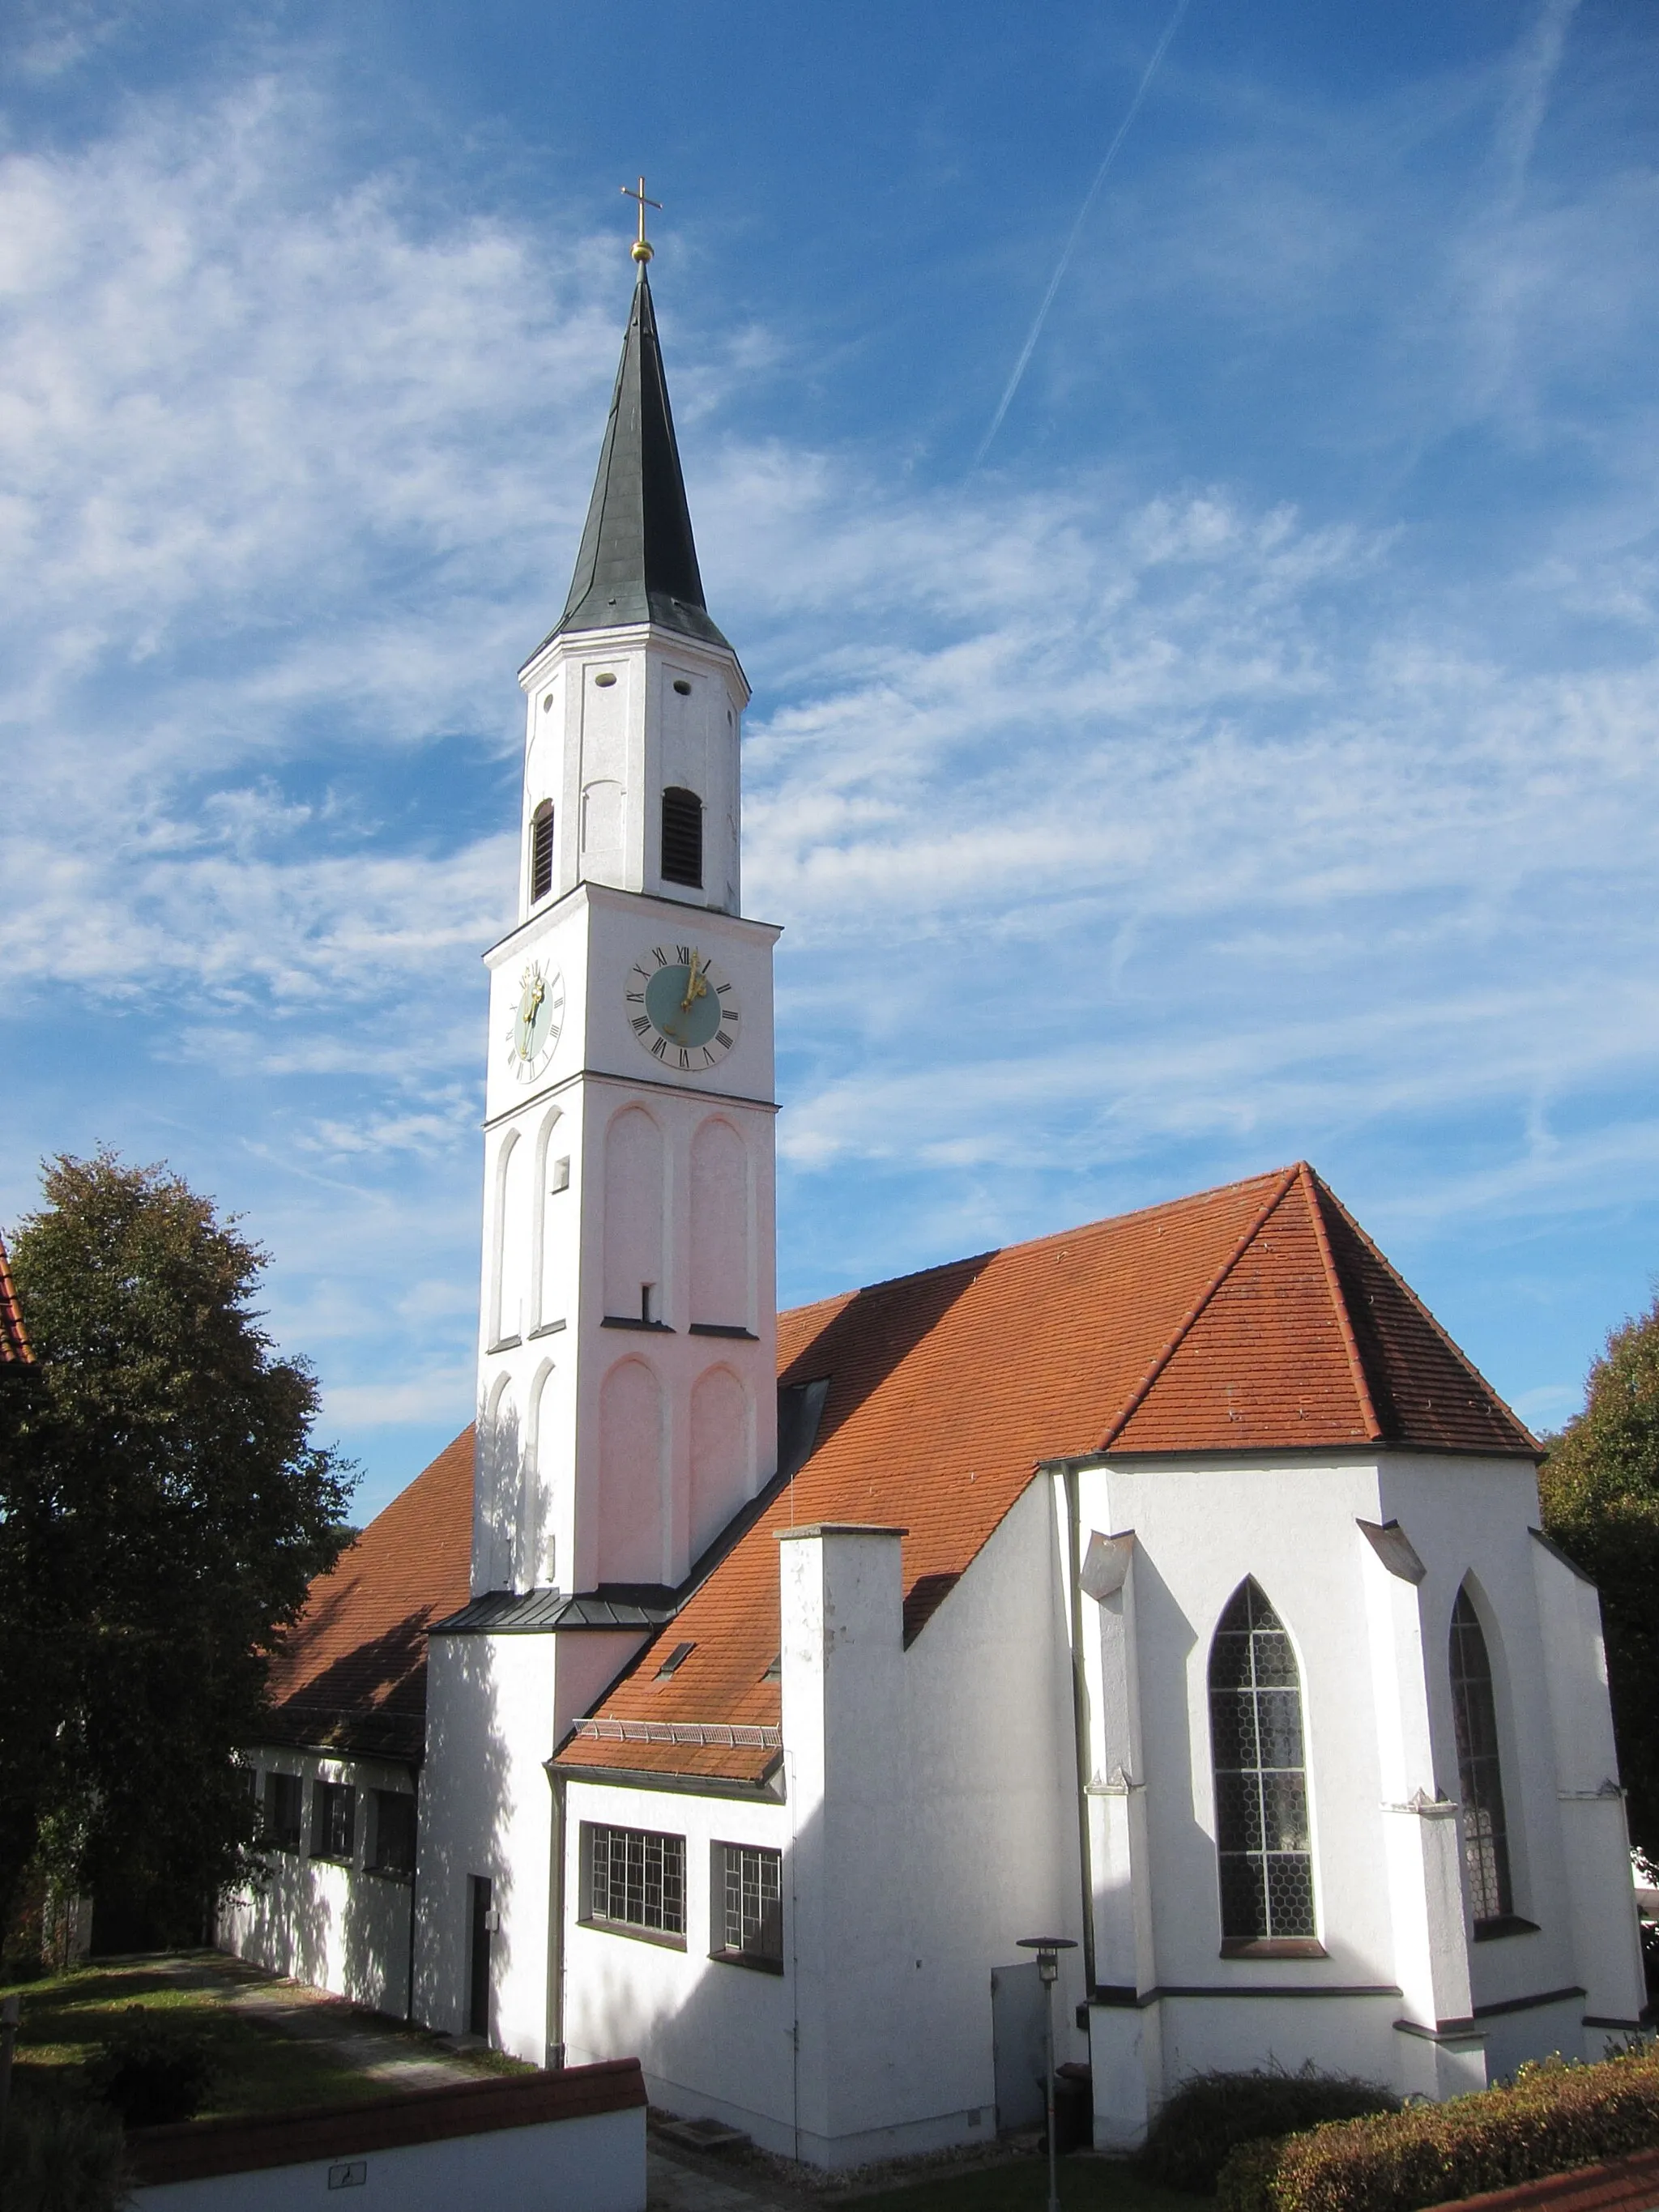 Photo showing: Buch am Erlbach; kath. Pfarrkirche St. Peter und Paul; Chor und Turmuntergeschosse gotisch, Langhaus modern; mit Ausstattung.